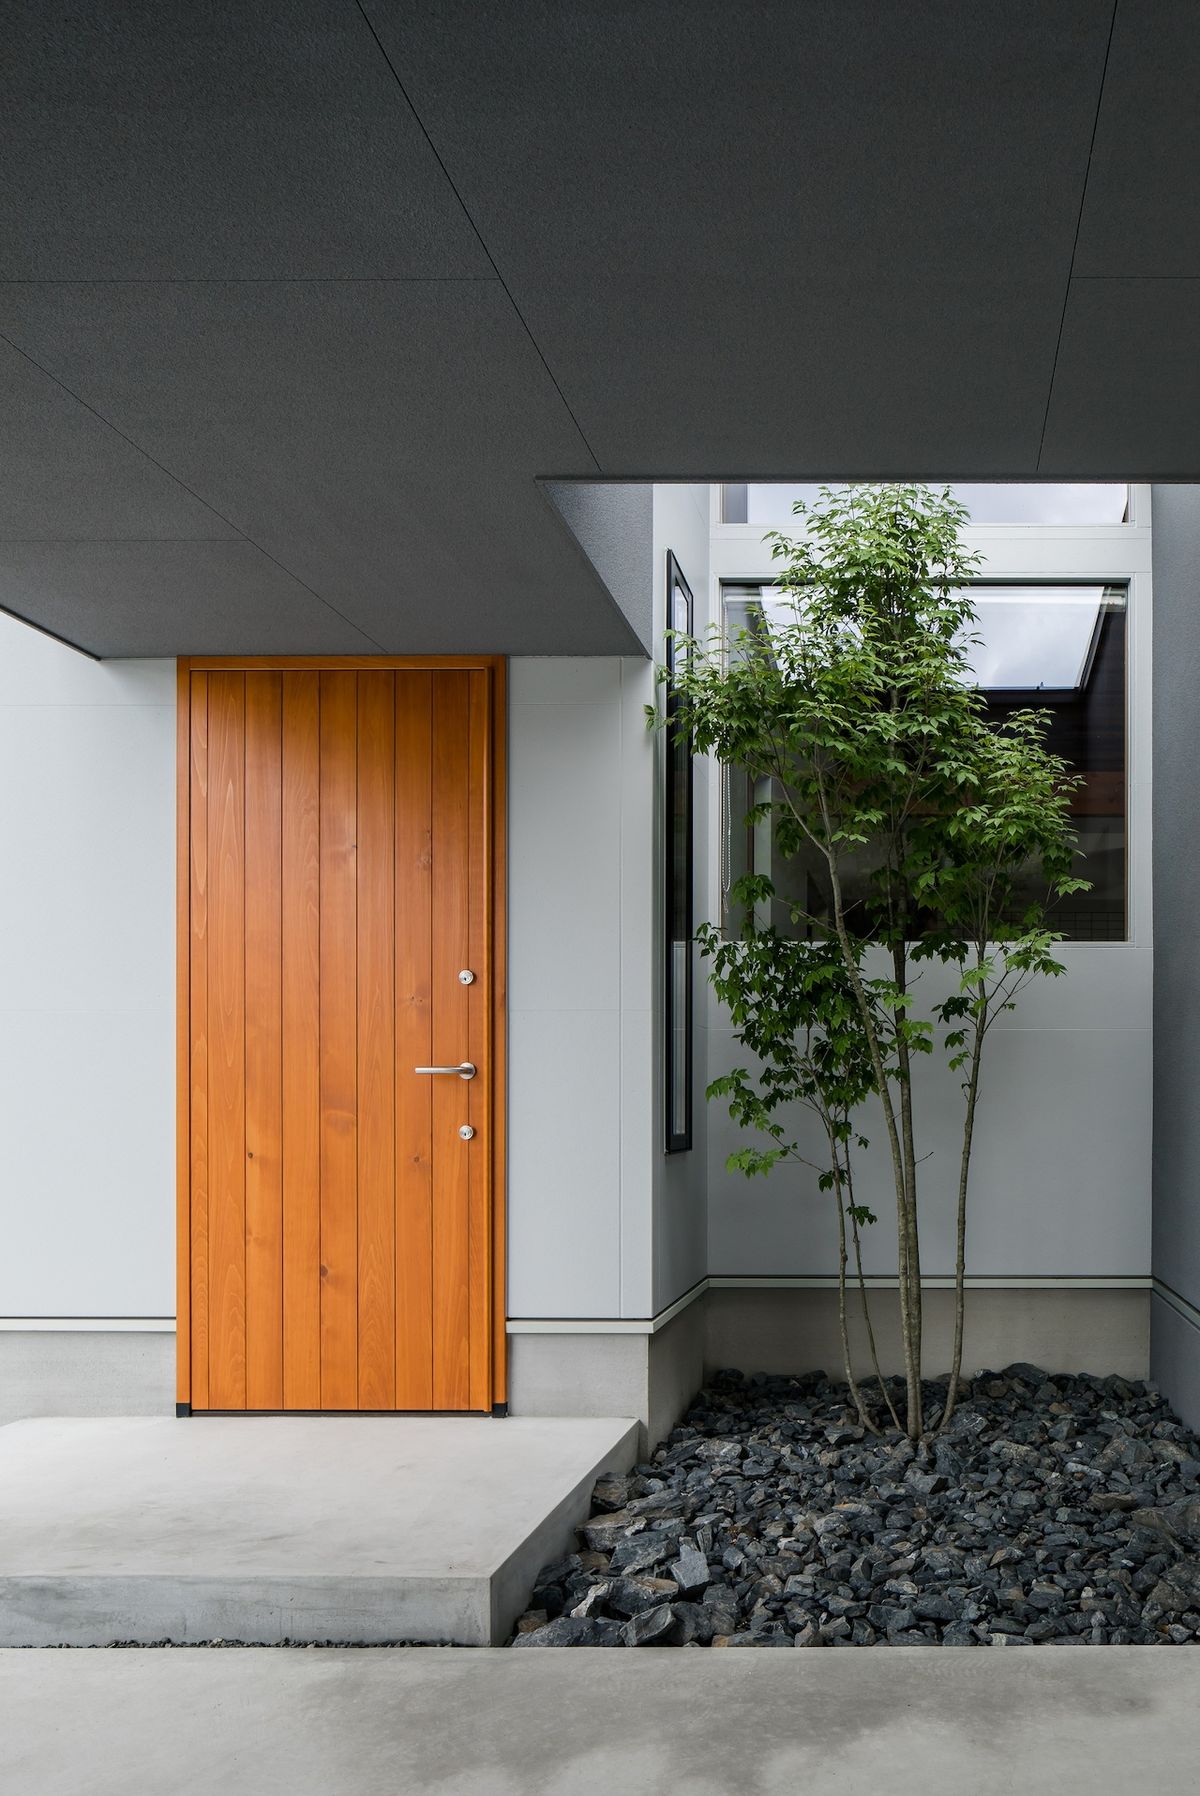 Strom vedle vstupních dveří do domu je možné vidět u mnoha japonských domů. Je to součástí tradice.